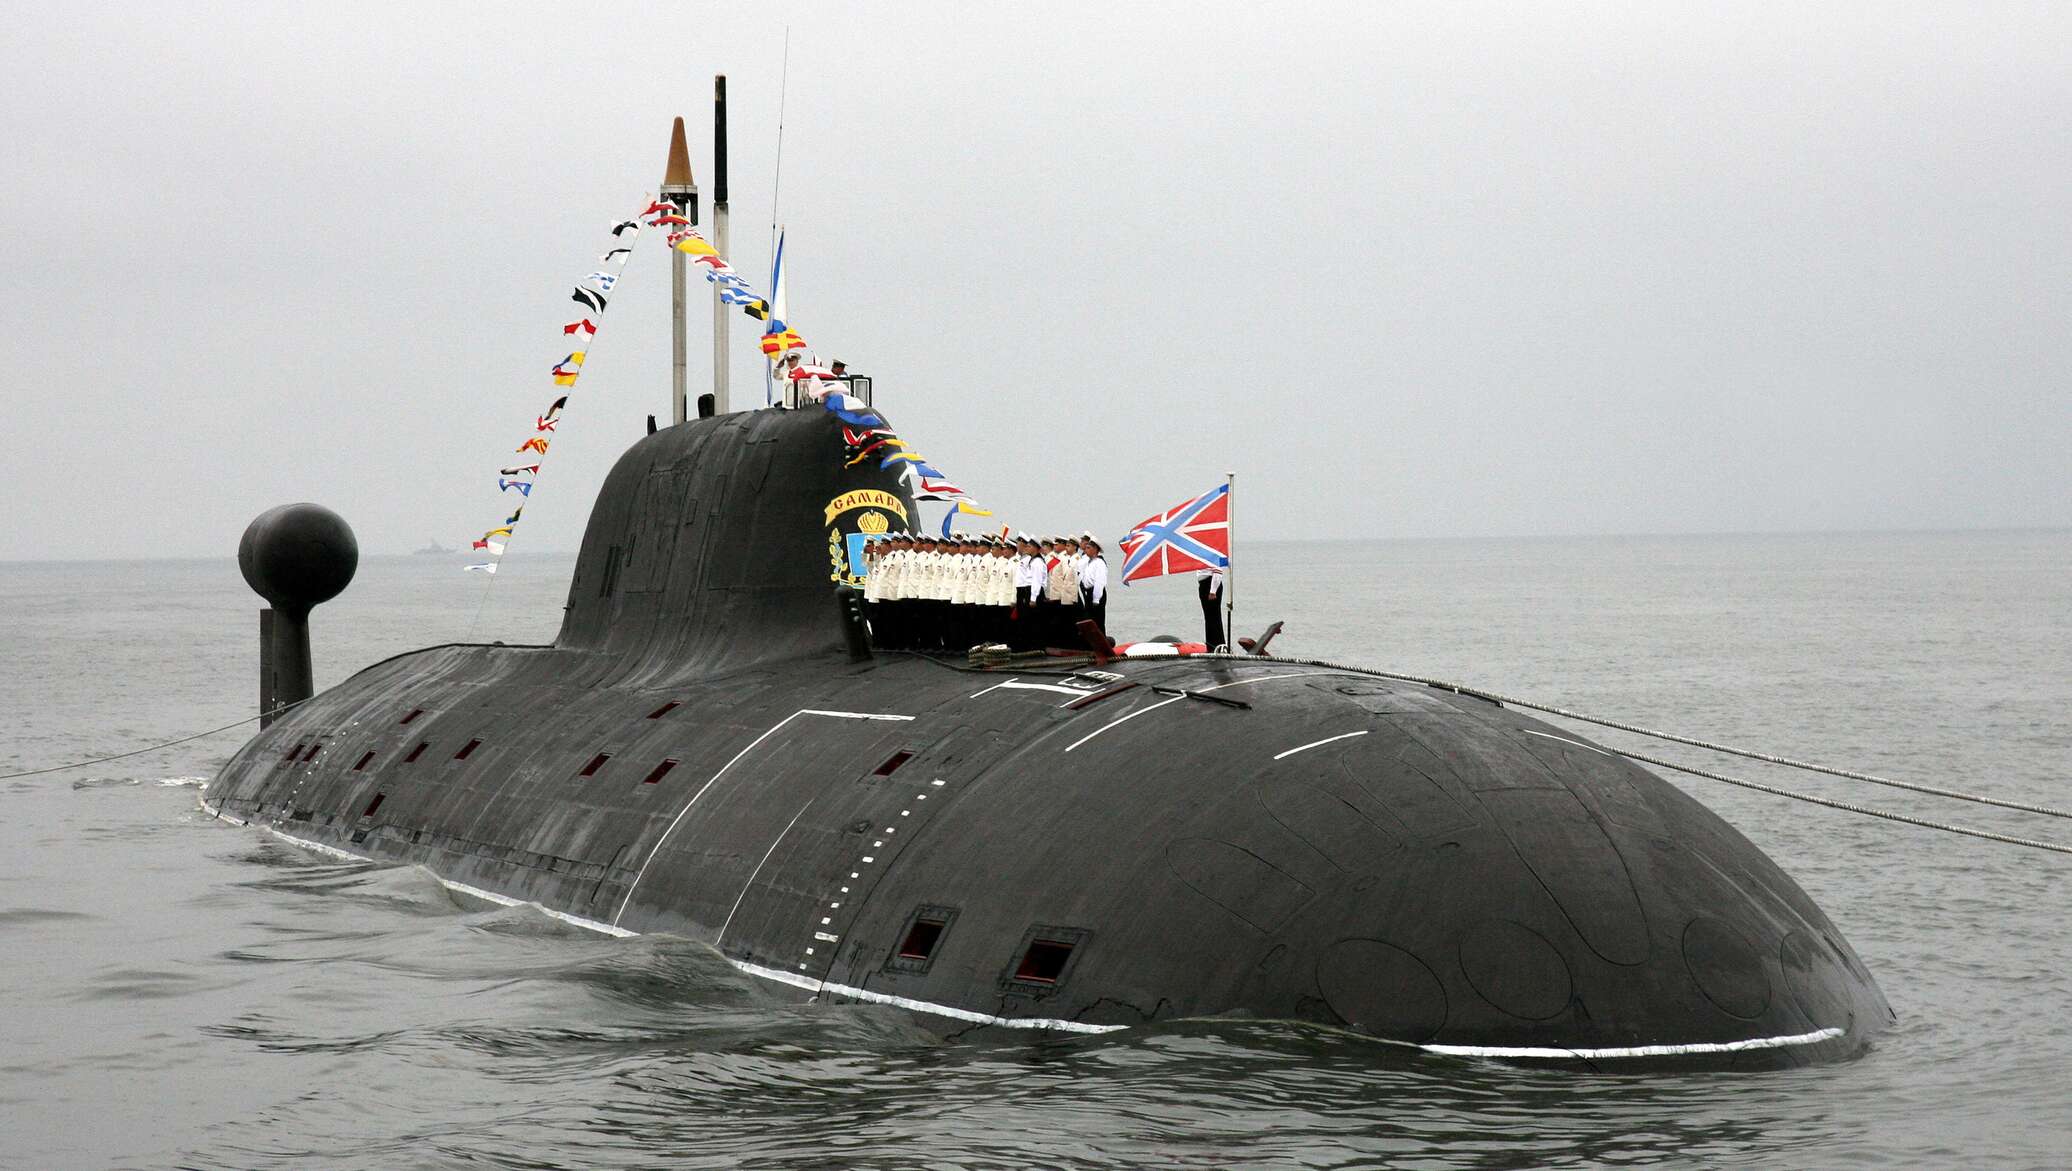 Подводный флот тихоокеанского флота. Подводные лодки проекта 955 «Борей». Подводная лодка к-295 Самара. Подводные лодки проекта 971 «щука-б». Атомная подводная лодка проекта 971 «Самара»..